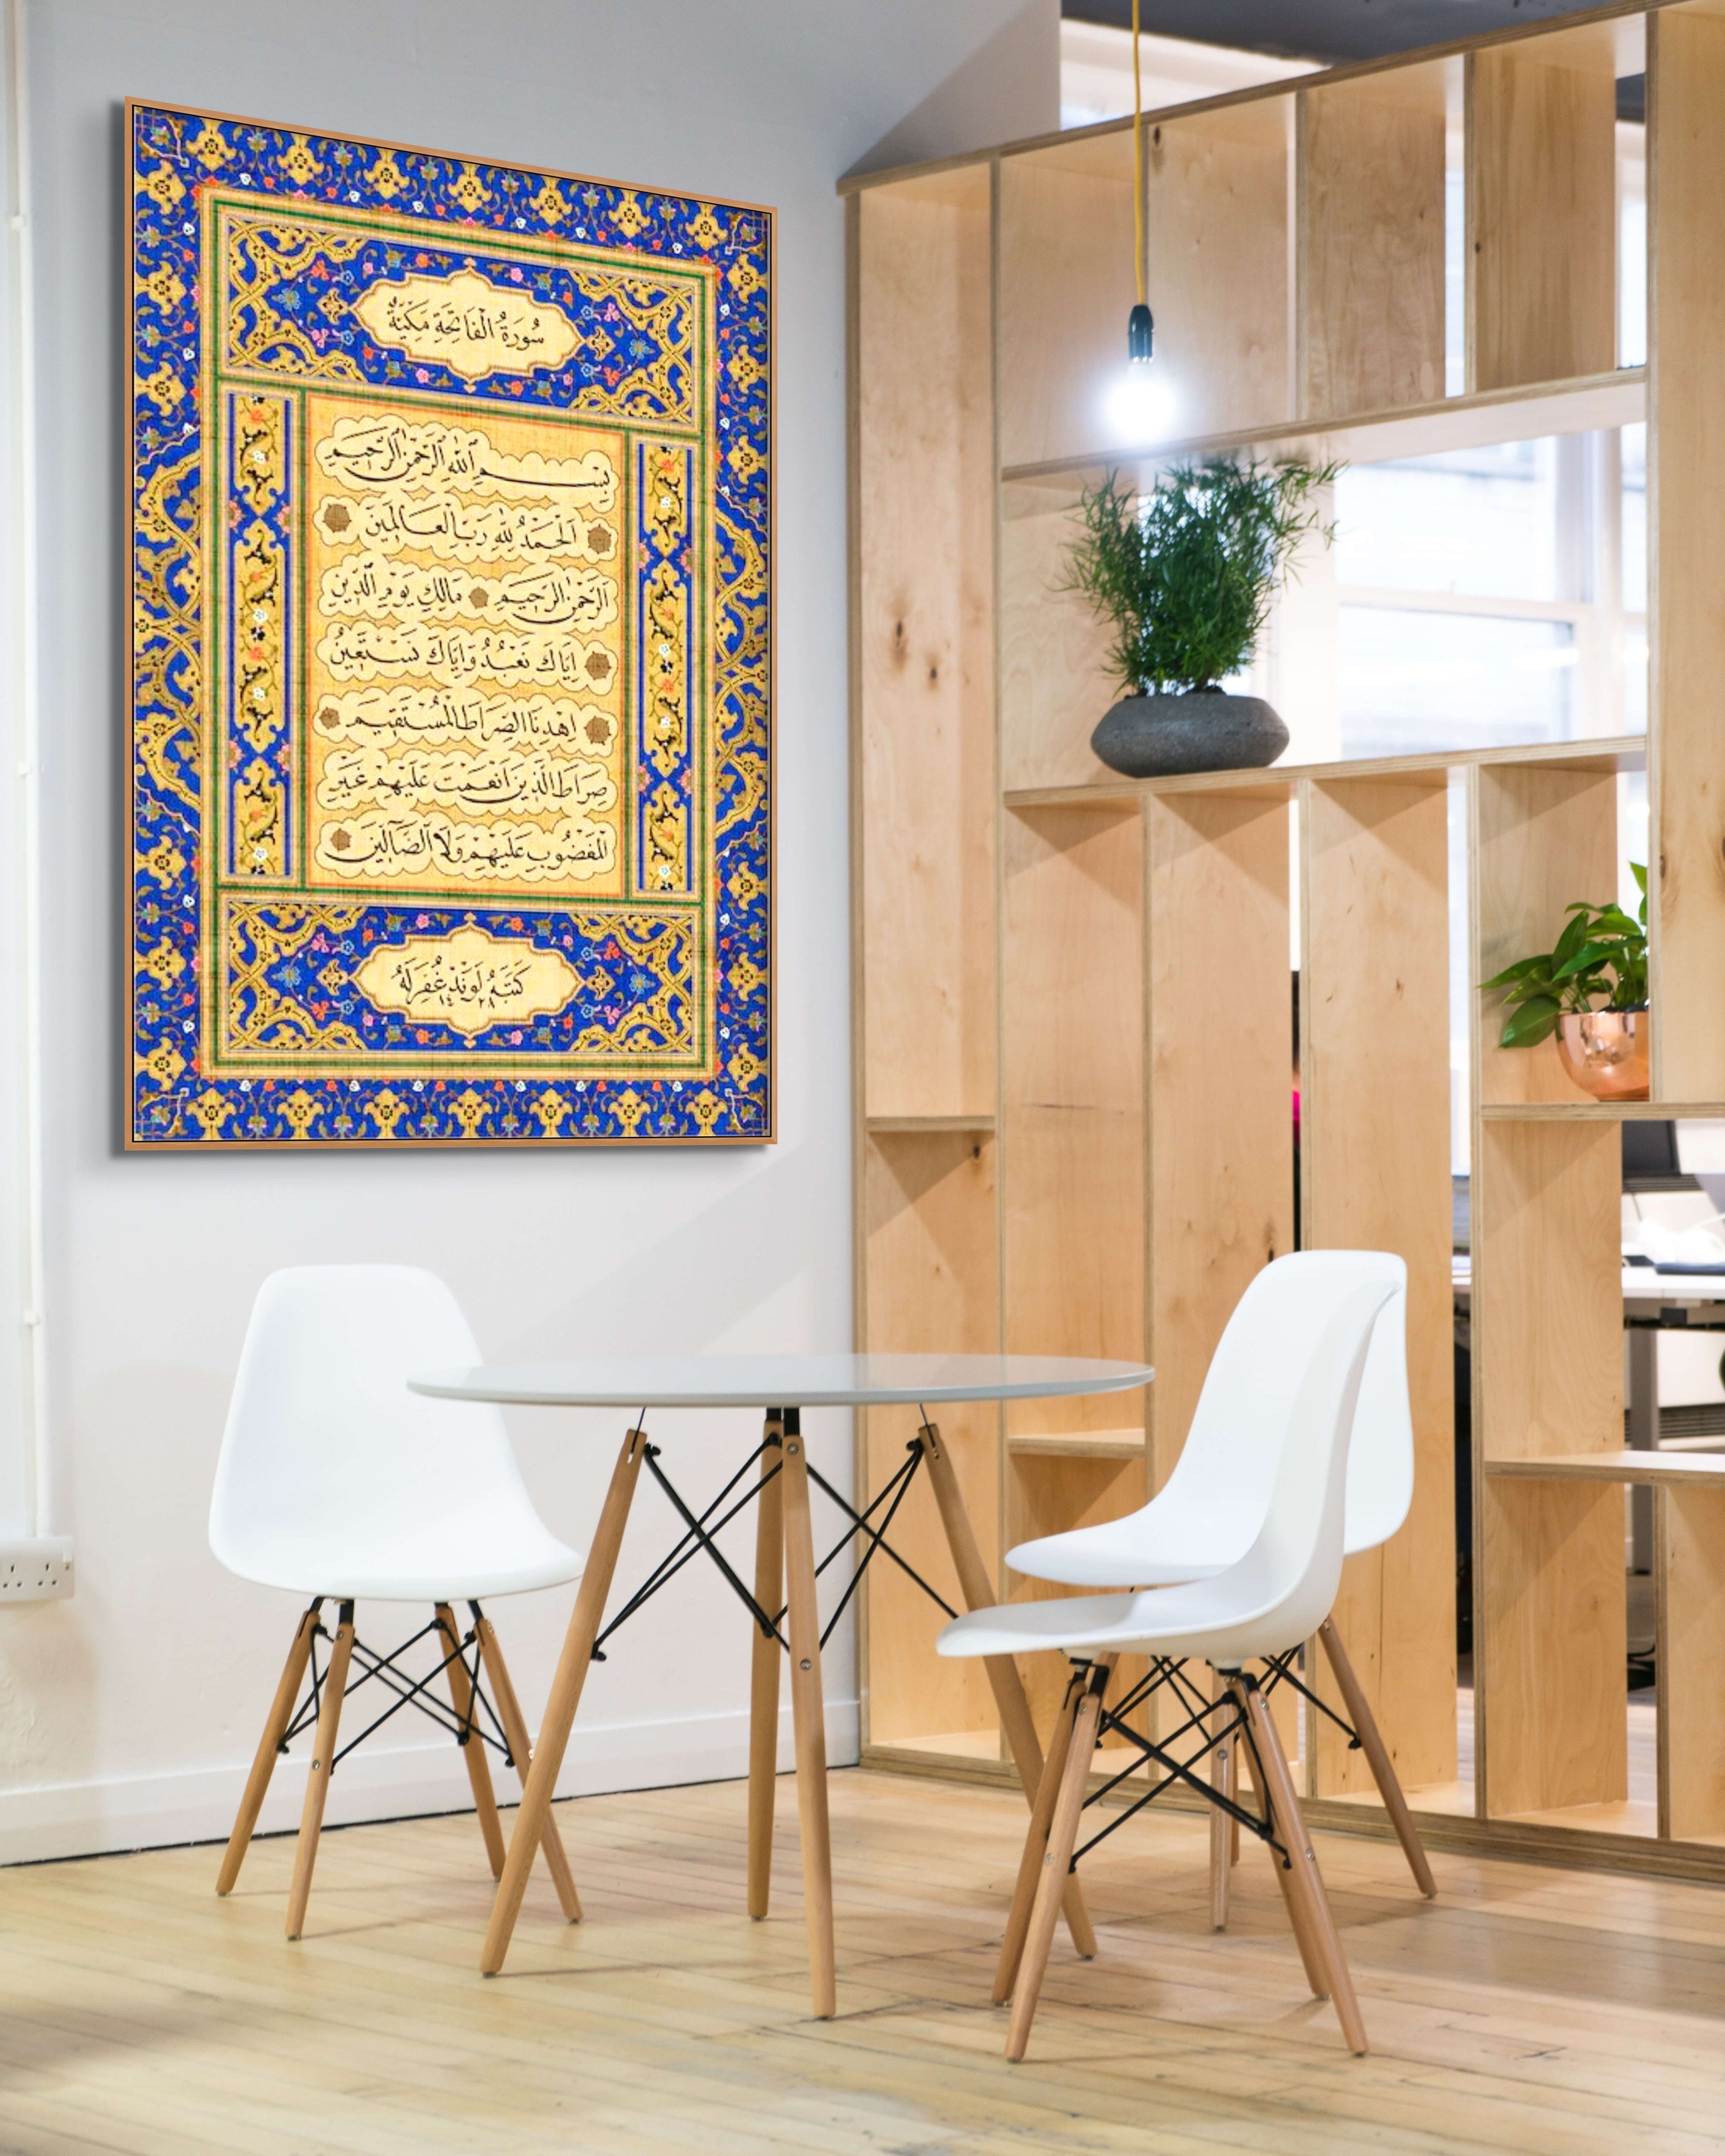 Framed Ottoman Style Surah Fatiha - Islamic Art UK